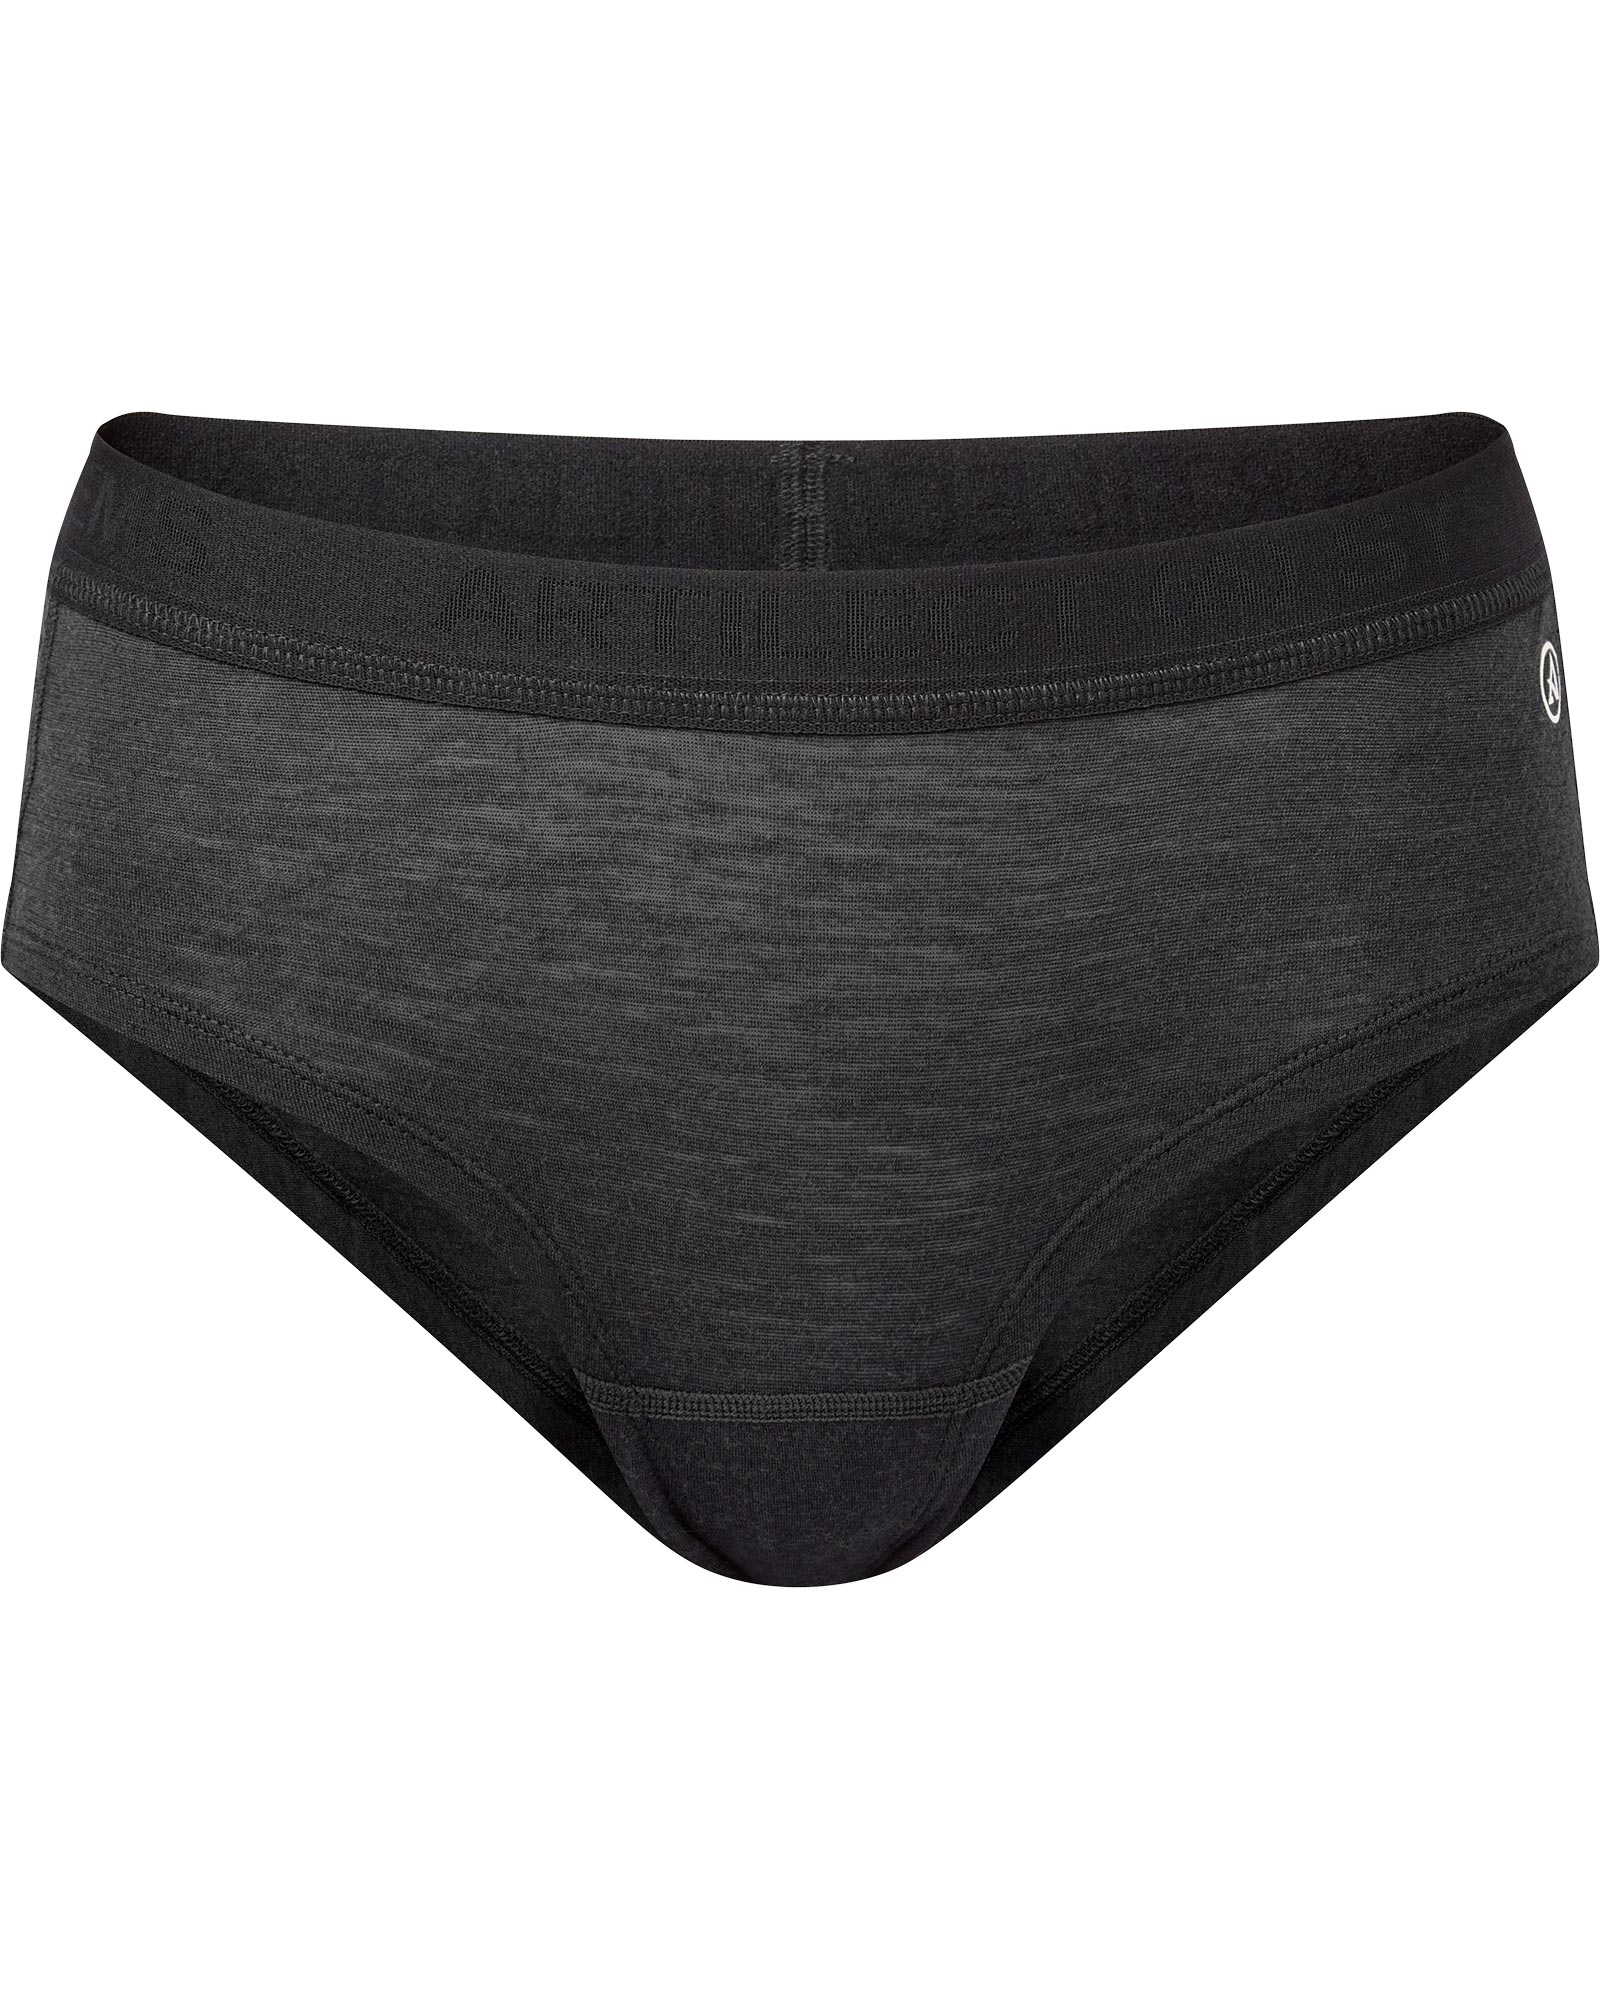 Artilect Boulder 125 Women’s Merino Hot Pants - black XS